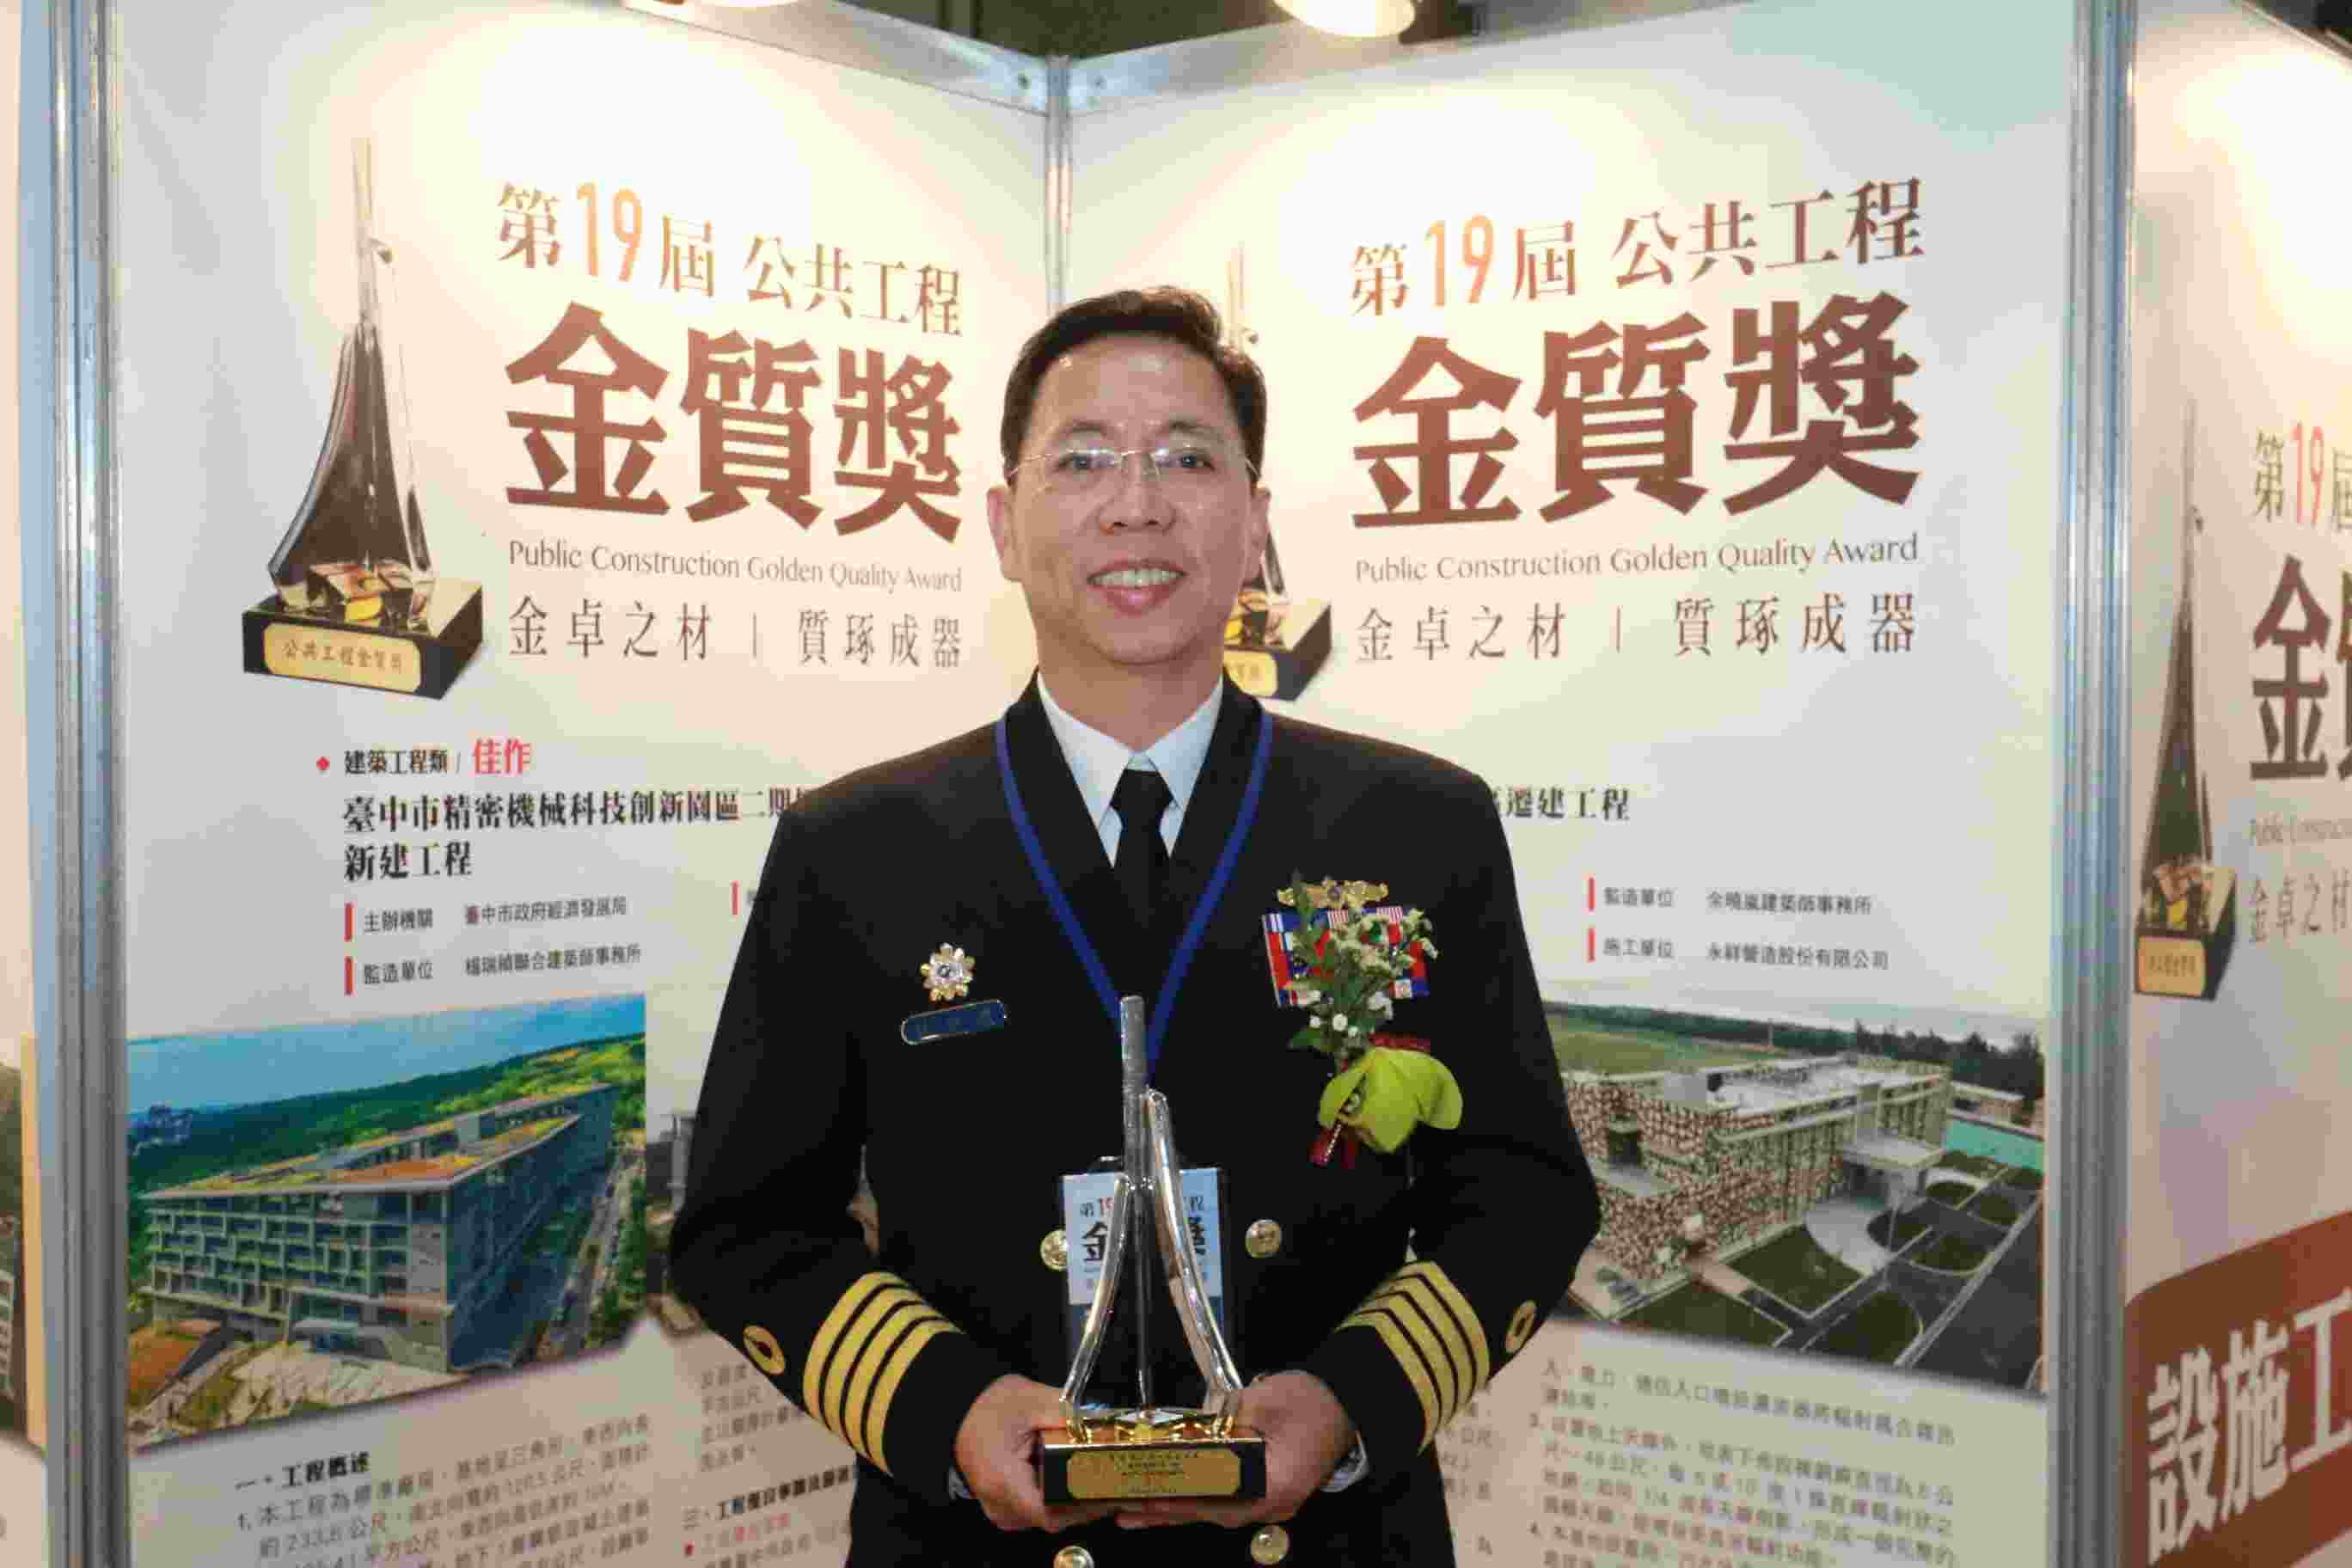 2019-12-24海軍通信系統指揮部指揮官參加第19屆公共工程金質獎頒獎典禮